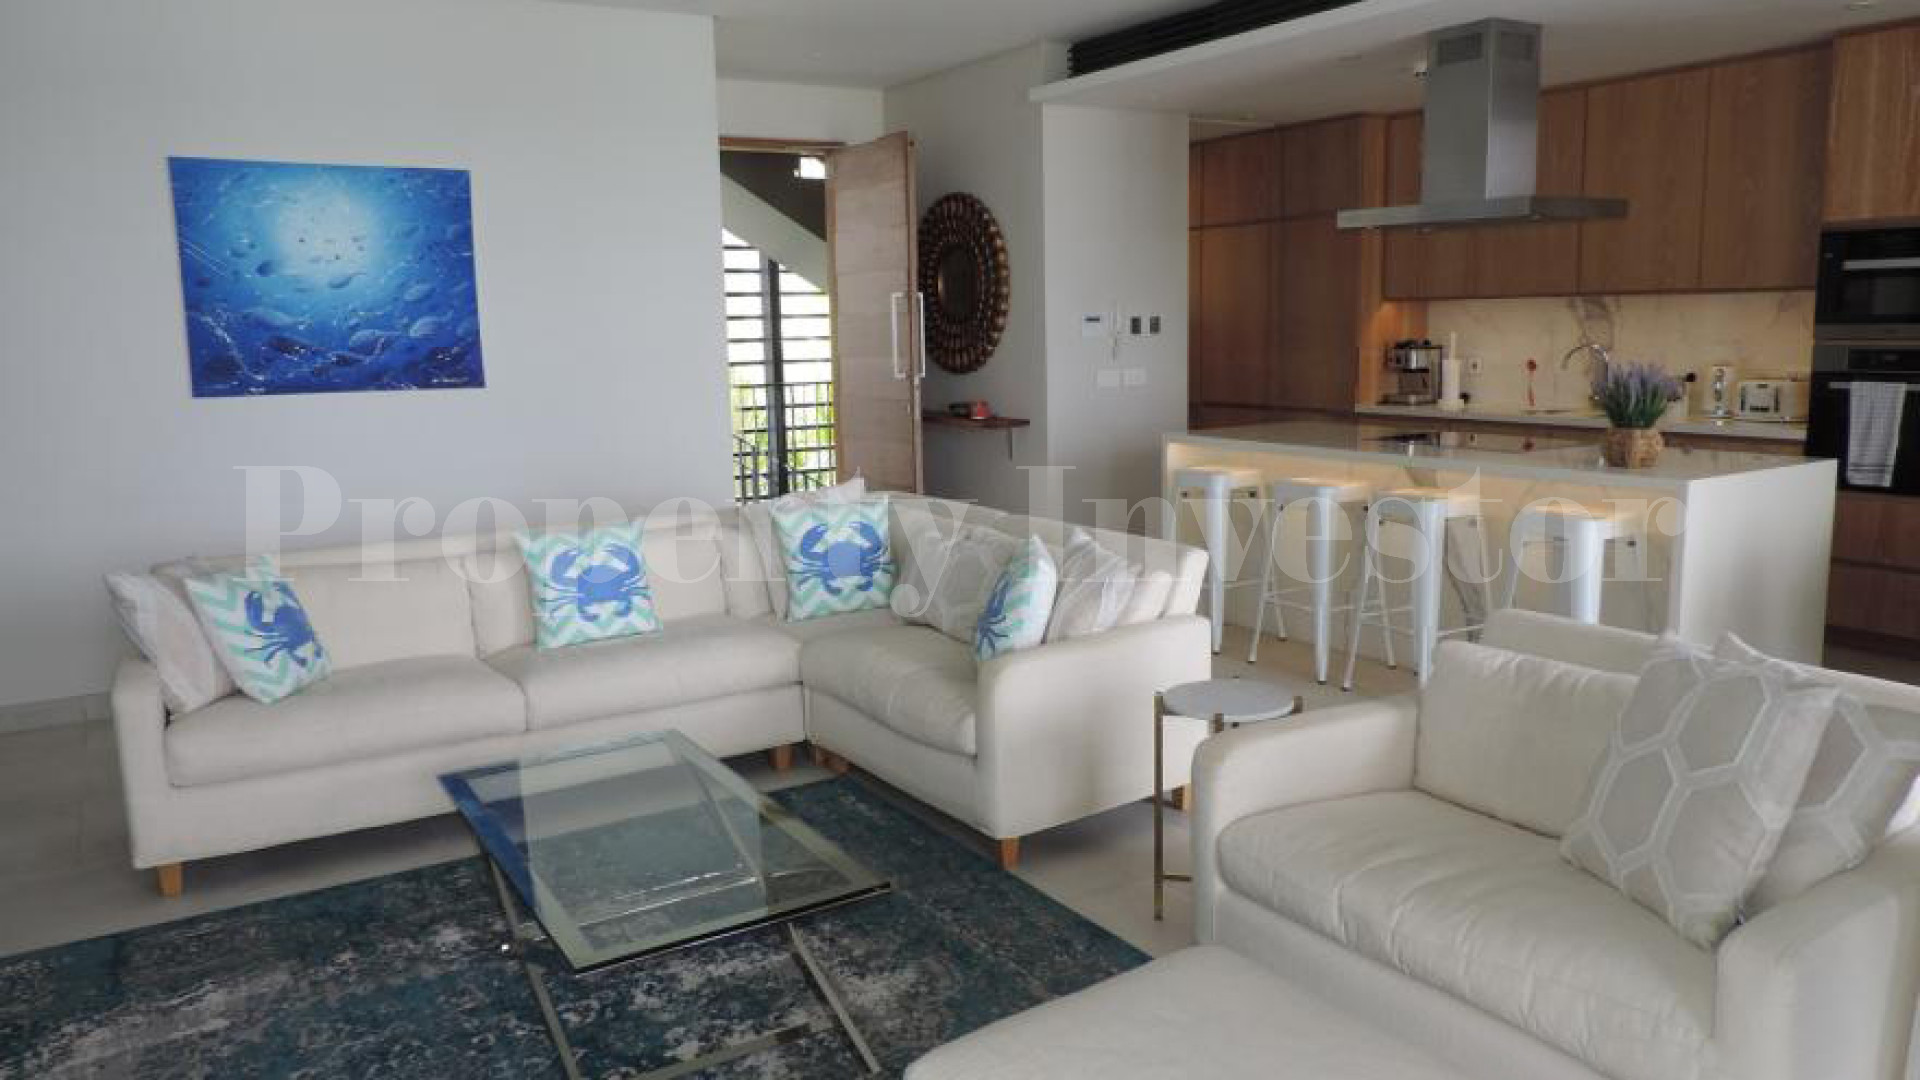 Эксклюзивный роскошный дизайнерский апартамент на 3 спальни на первой линии с потрясающим видом на море на Маэ, Сейшелы